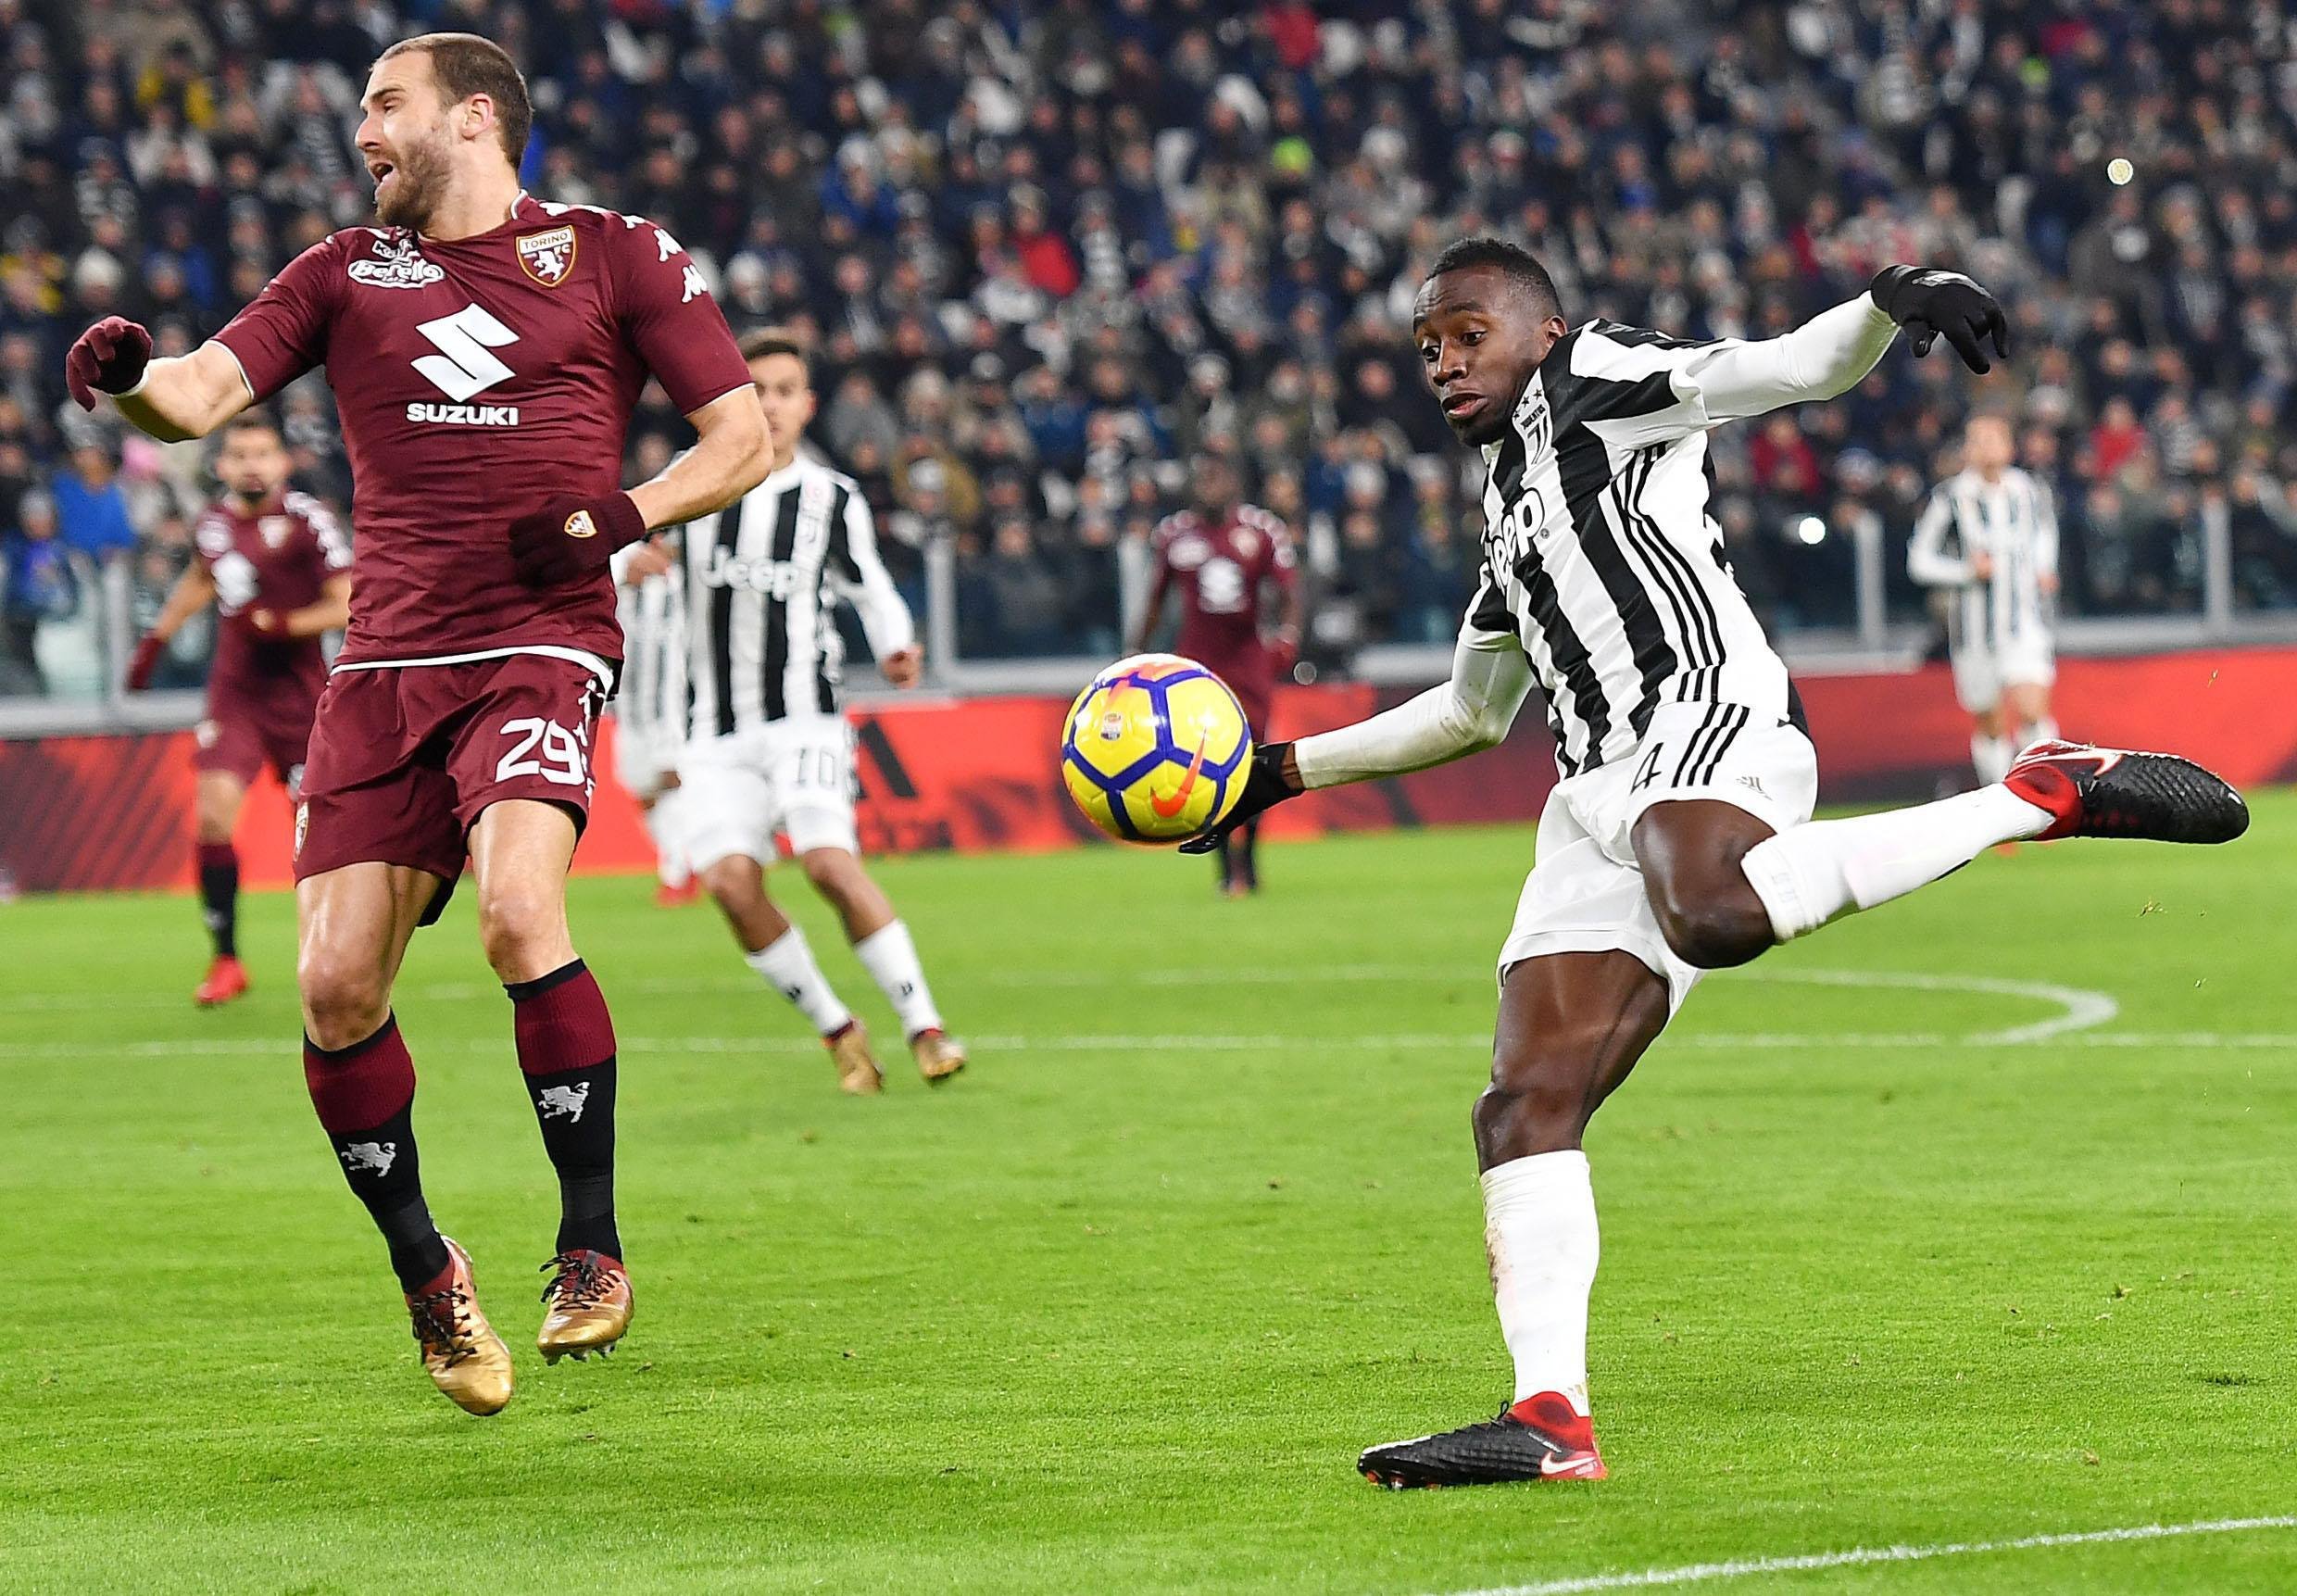 Sanción ejemplar de la Liga italiana por cánticos racistas contra un futbolista de la Juventus